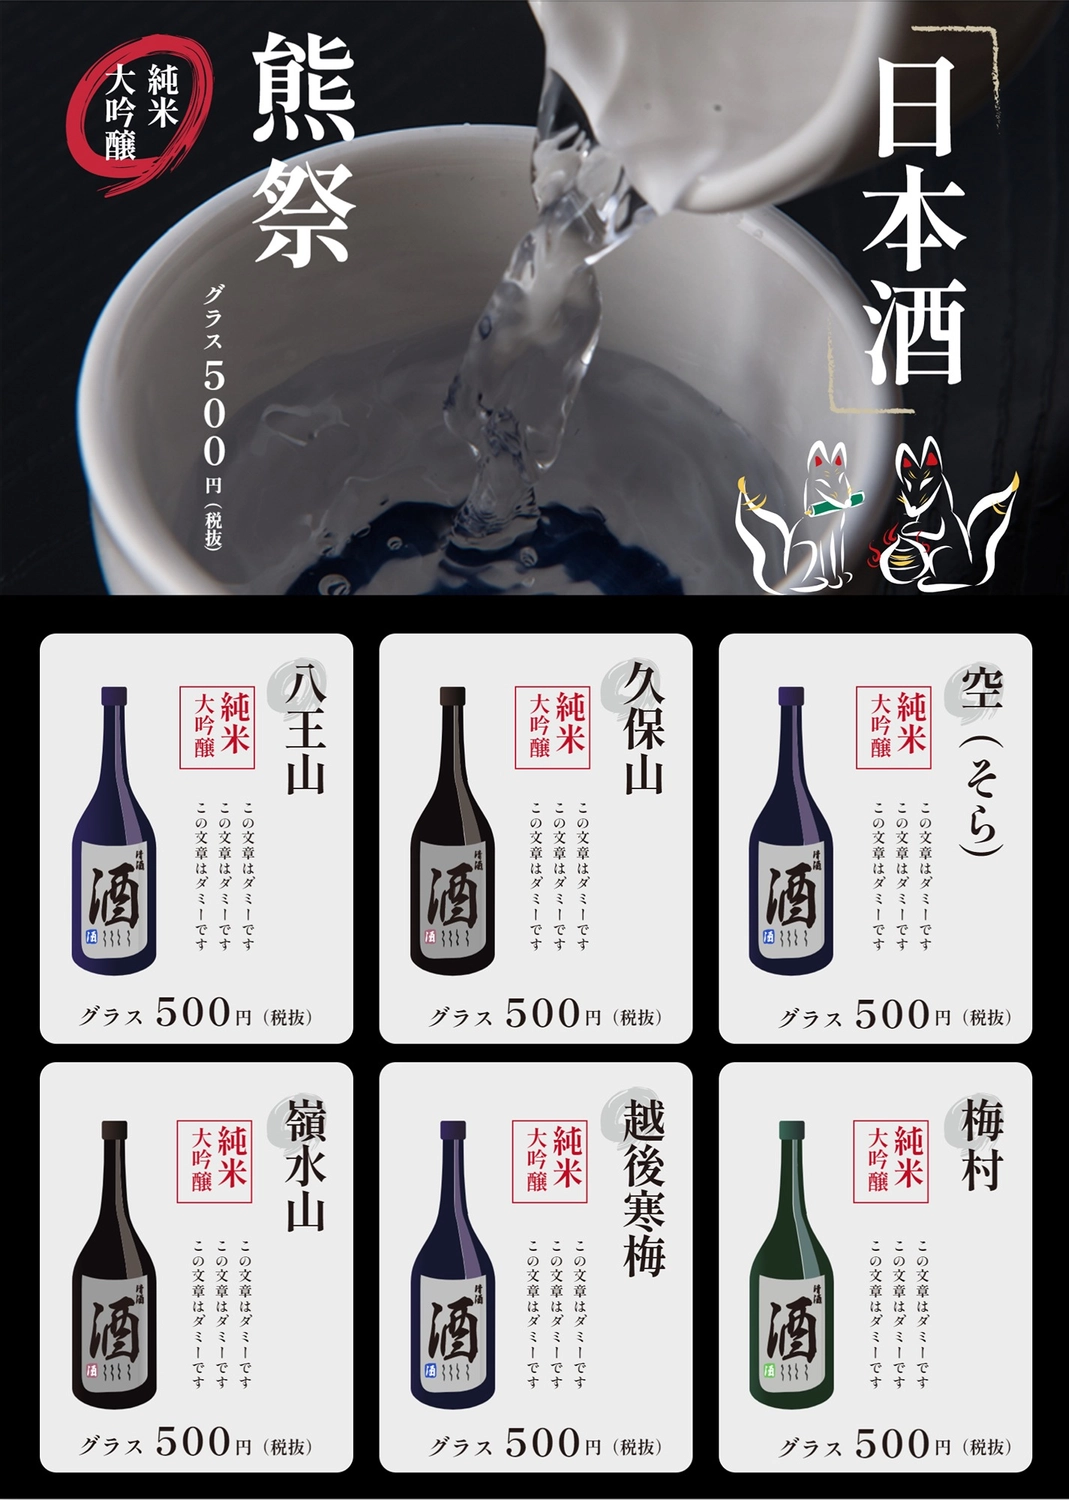 日本酒のメニュー, バー, シンプル, と, メニューテンプレート